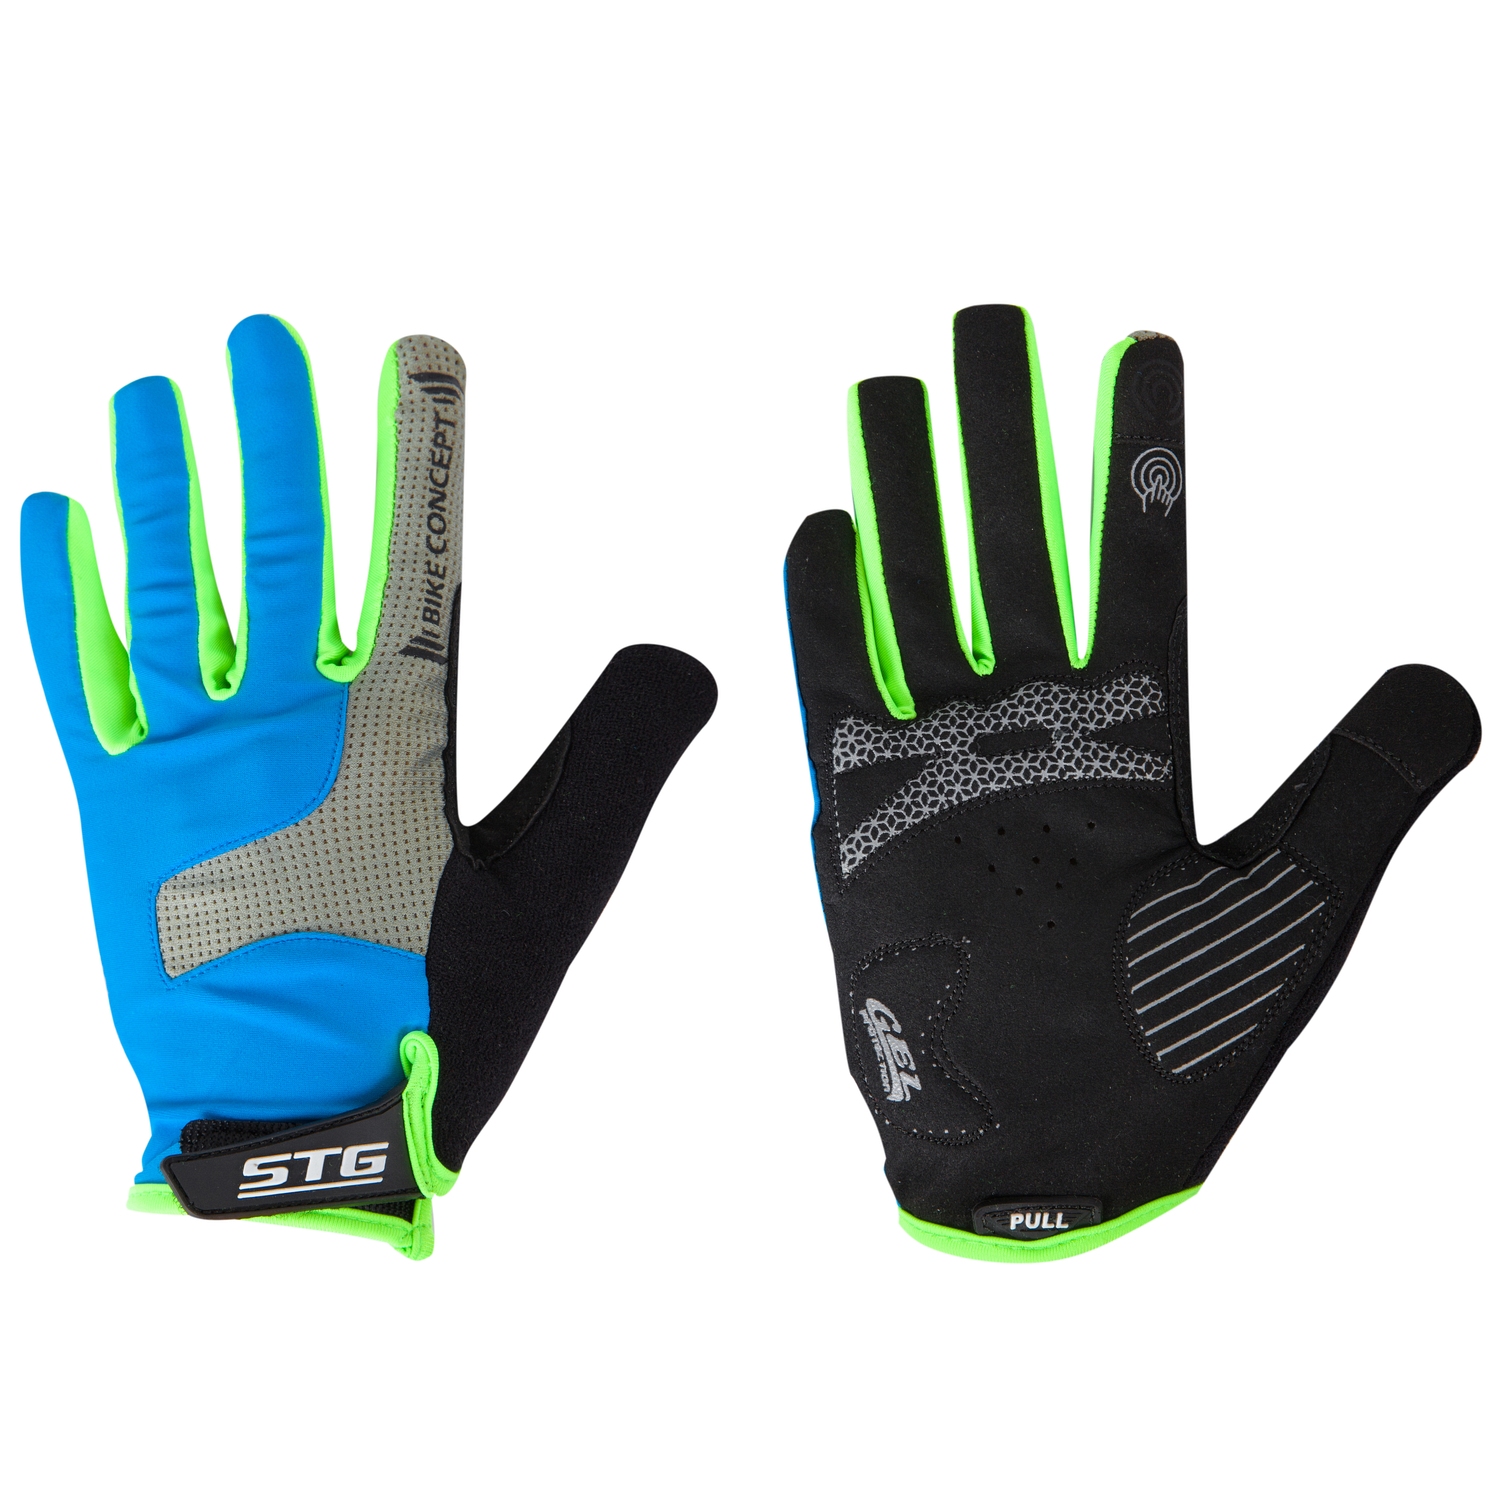 Велоперчатки STG мод.AL-05-1871 синие/серые/черные/зеленые   полноразмерные  XS